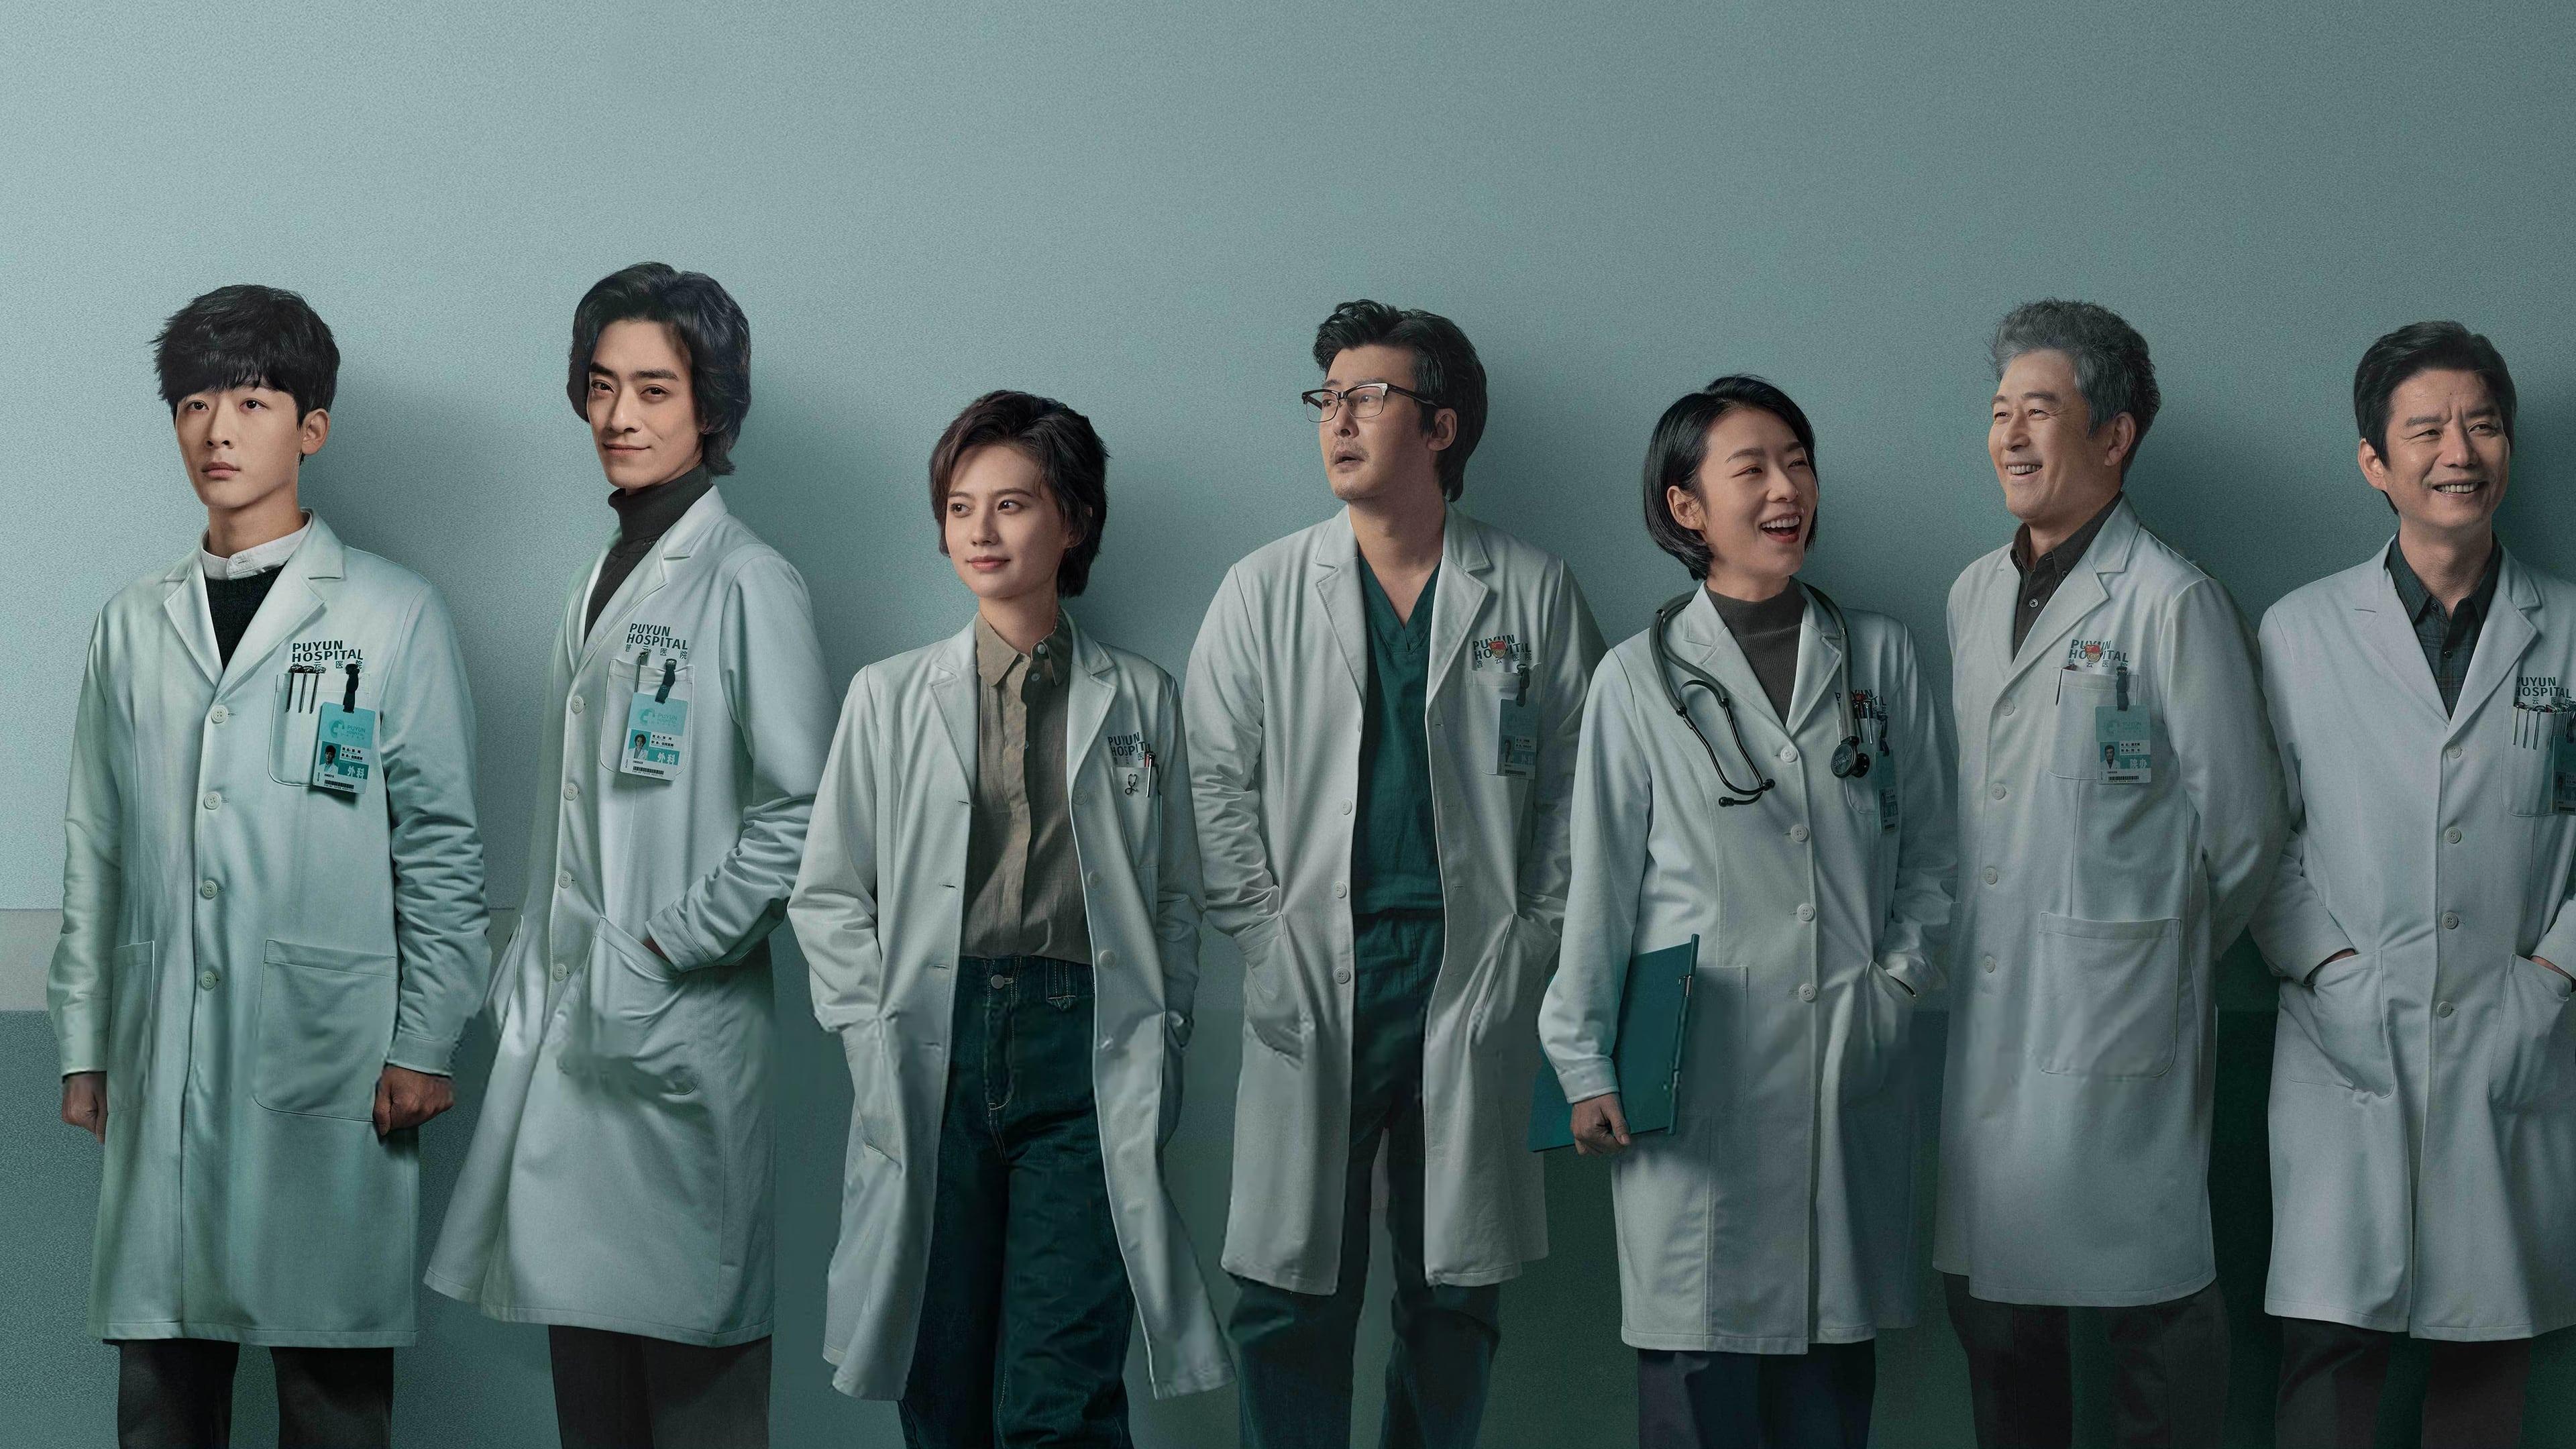 Fantastic Doctors backdrop